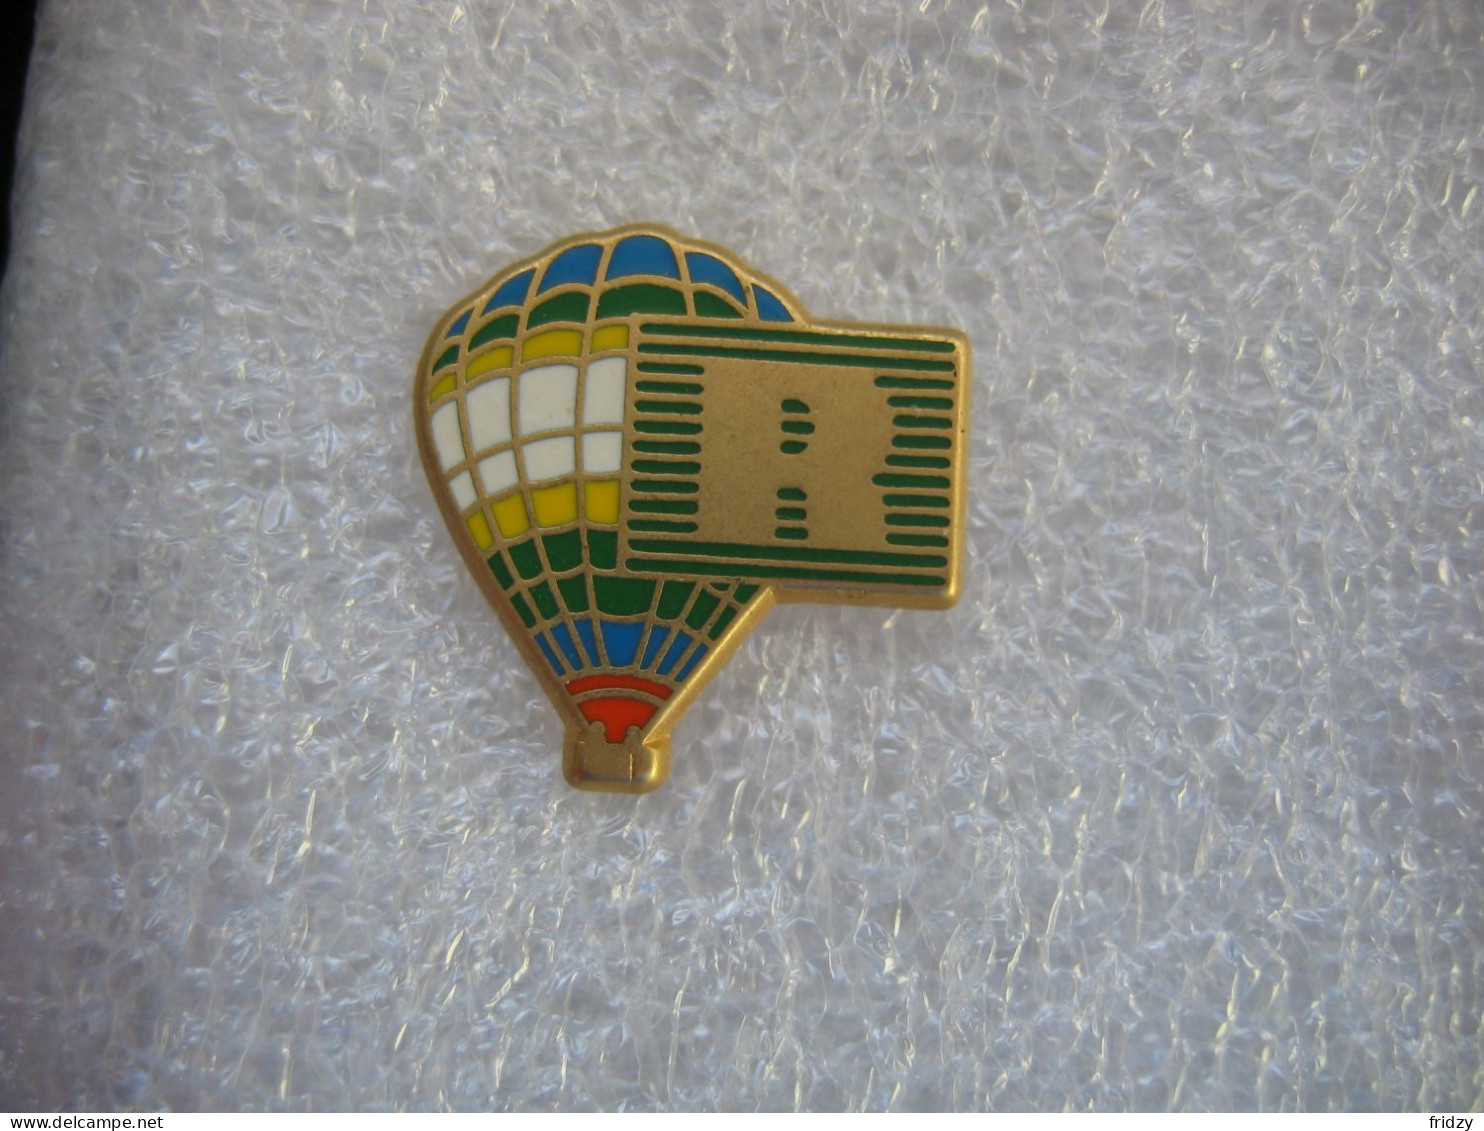 Pin's Montgolfière Avec Le Logo "R" De La Banque BNP - Fesselballons